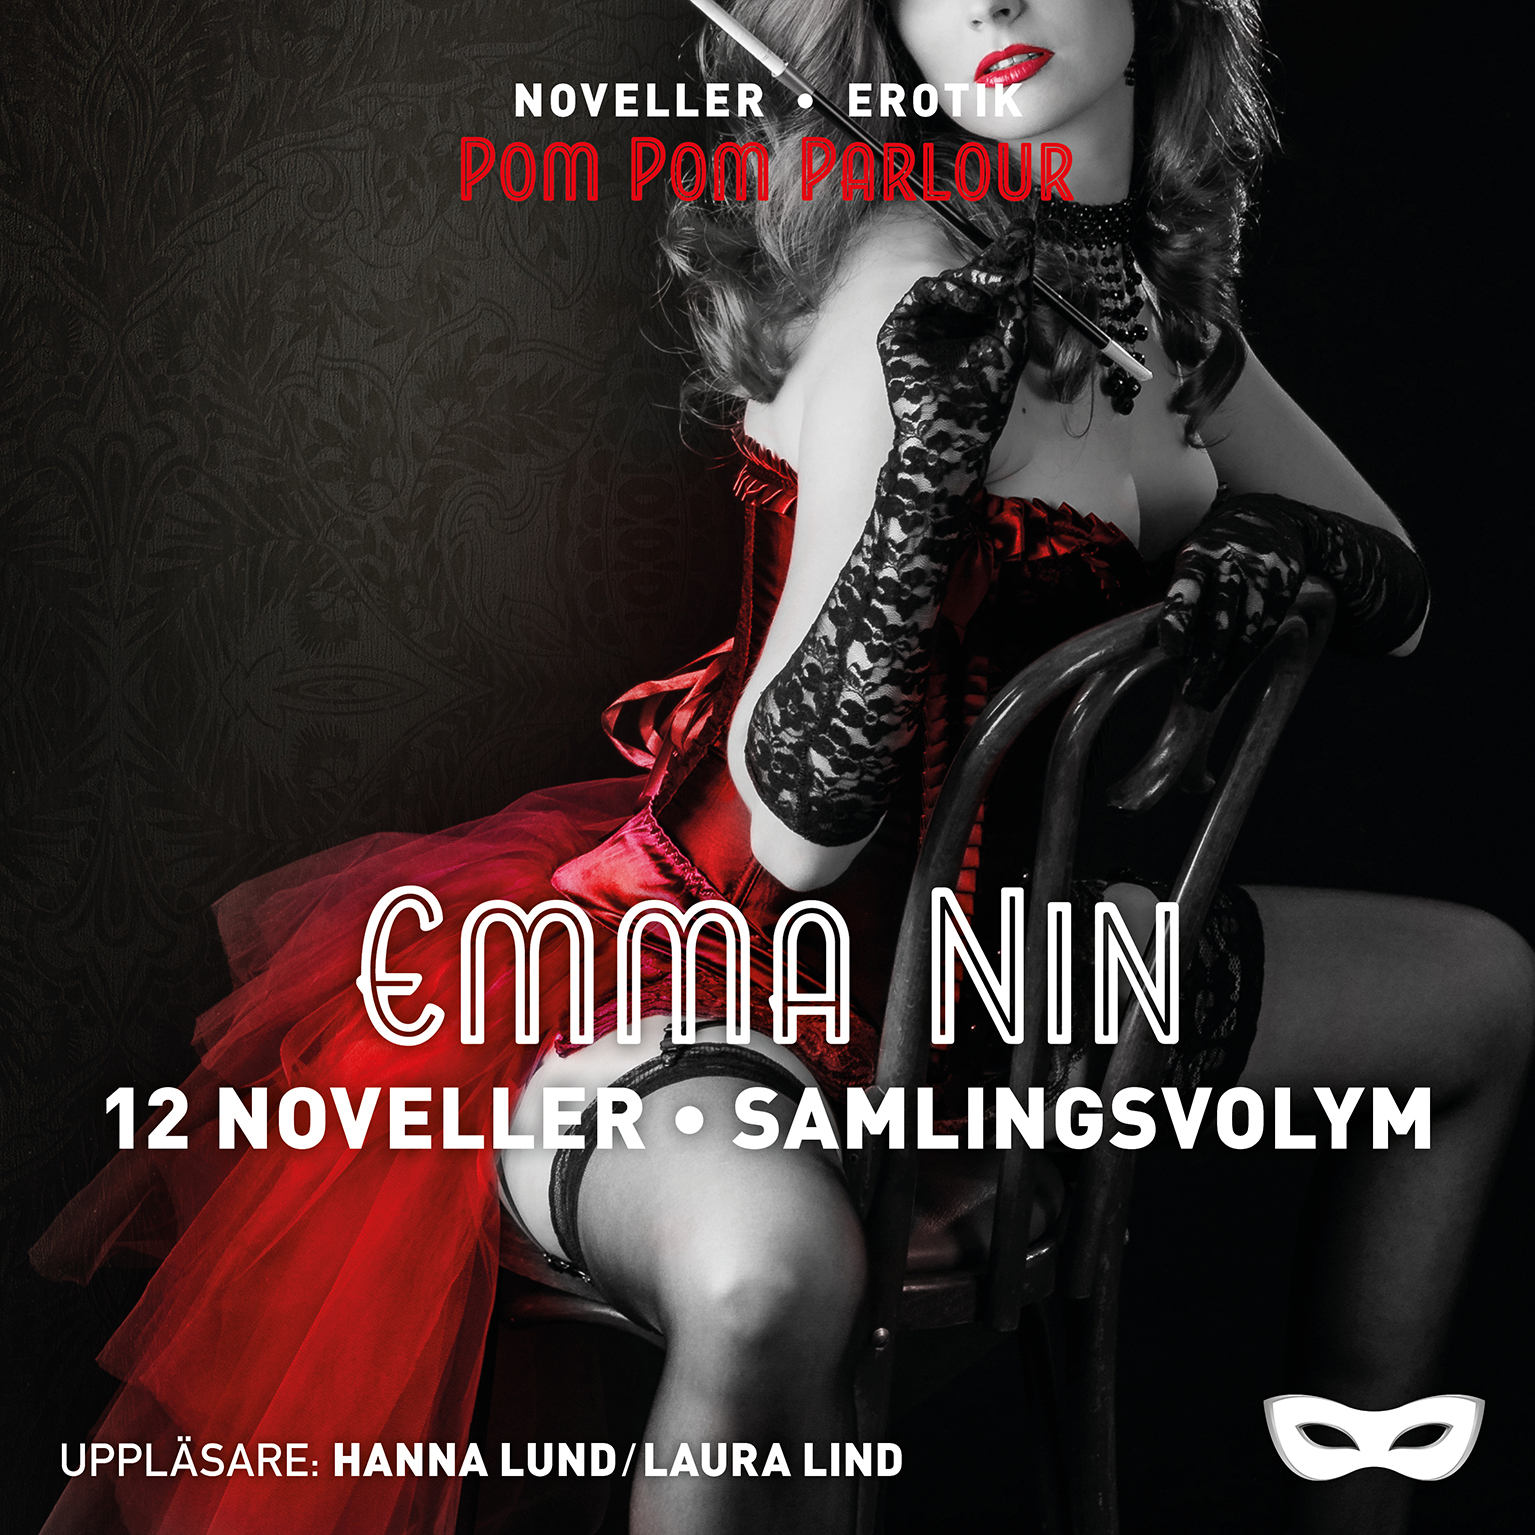 ENSAM1-12_Samlingsvolym 12 noveller_Emma Nin_audio.jpg